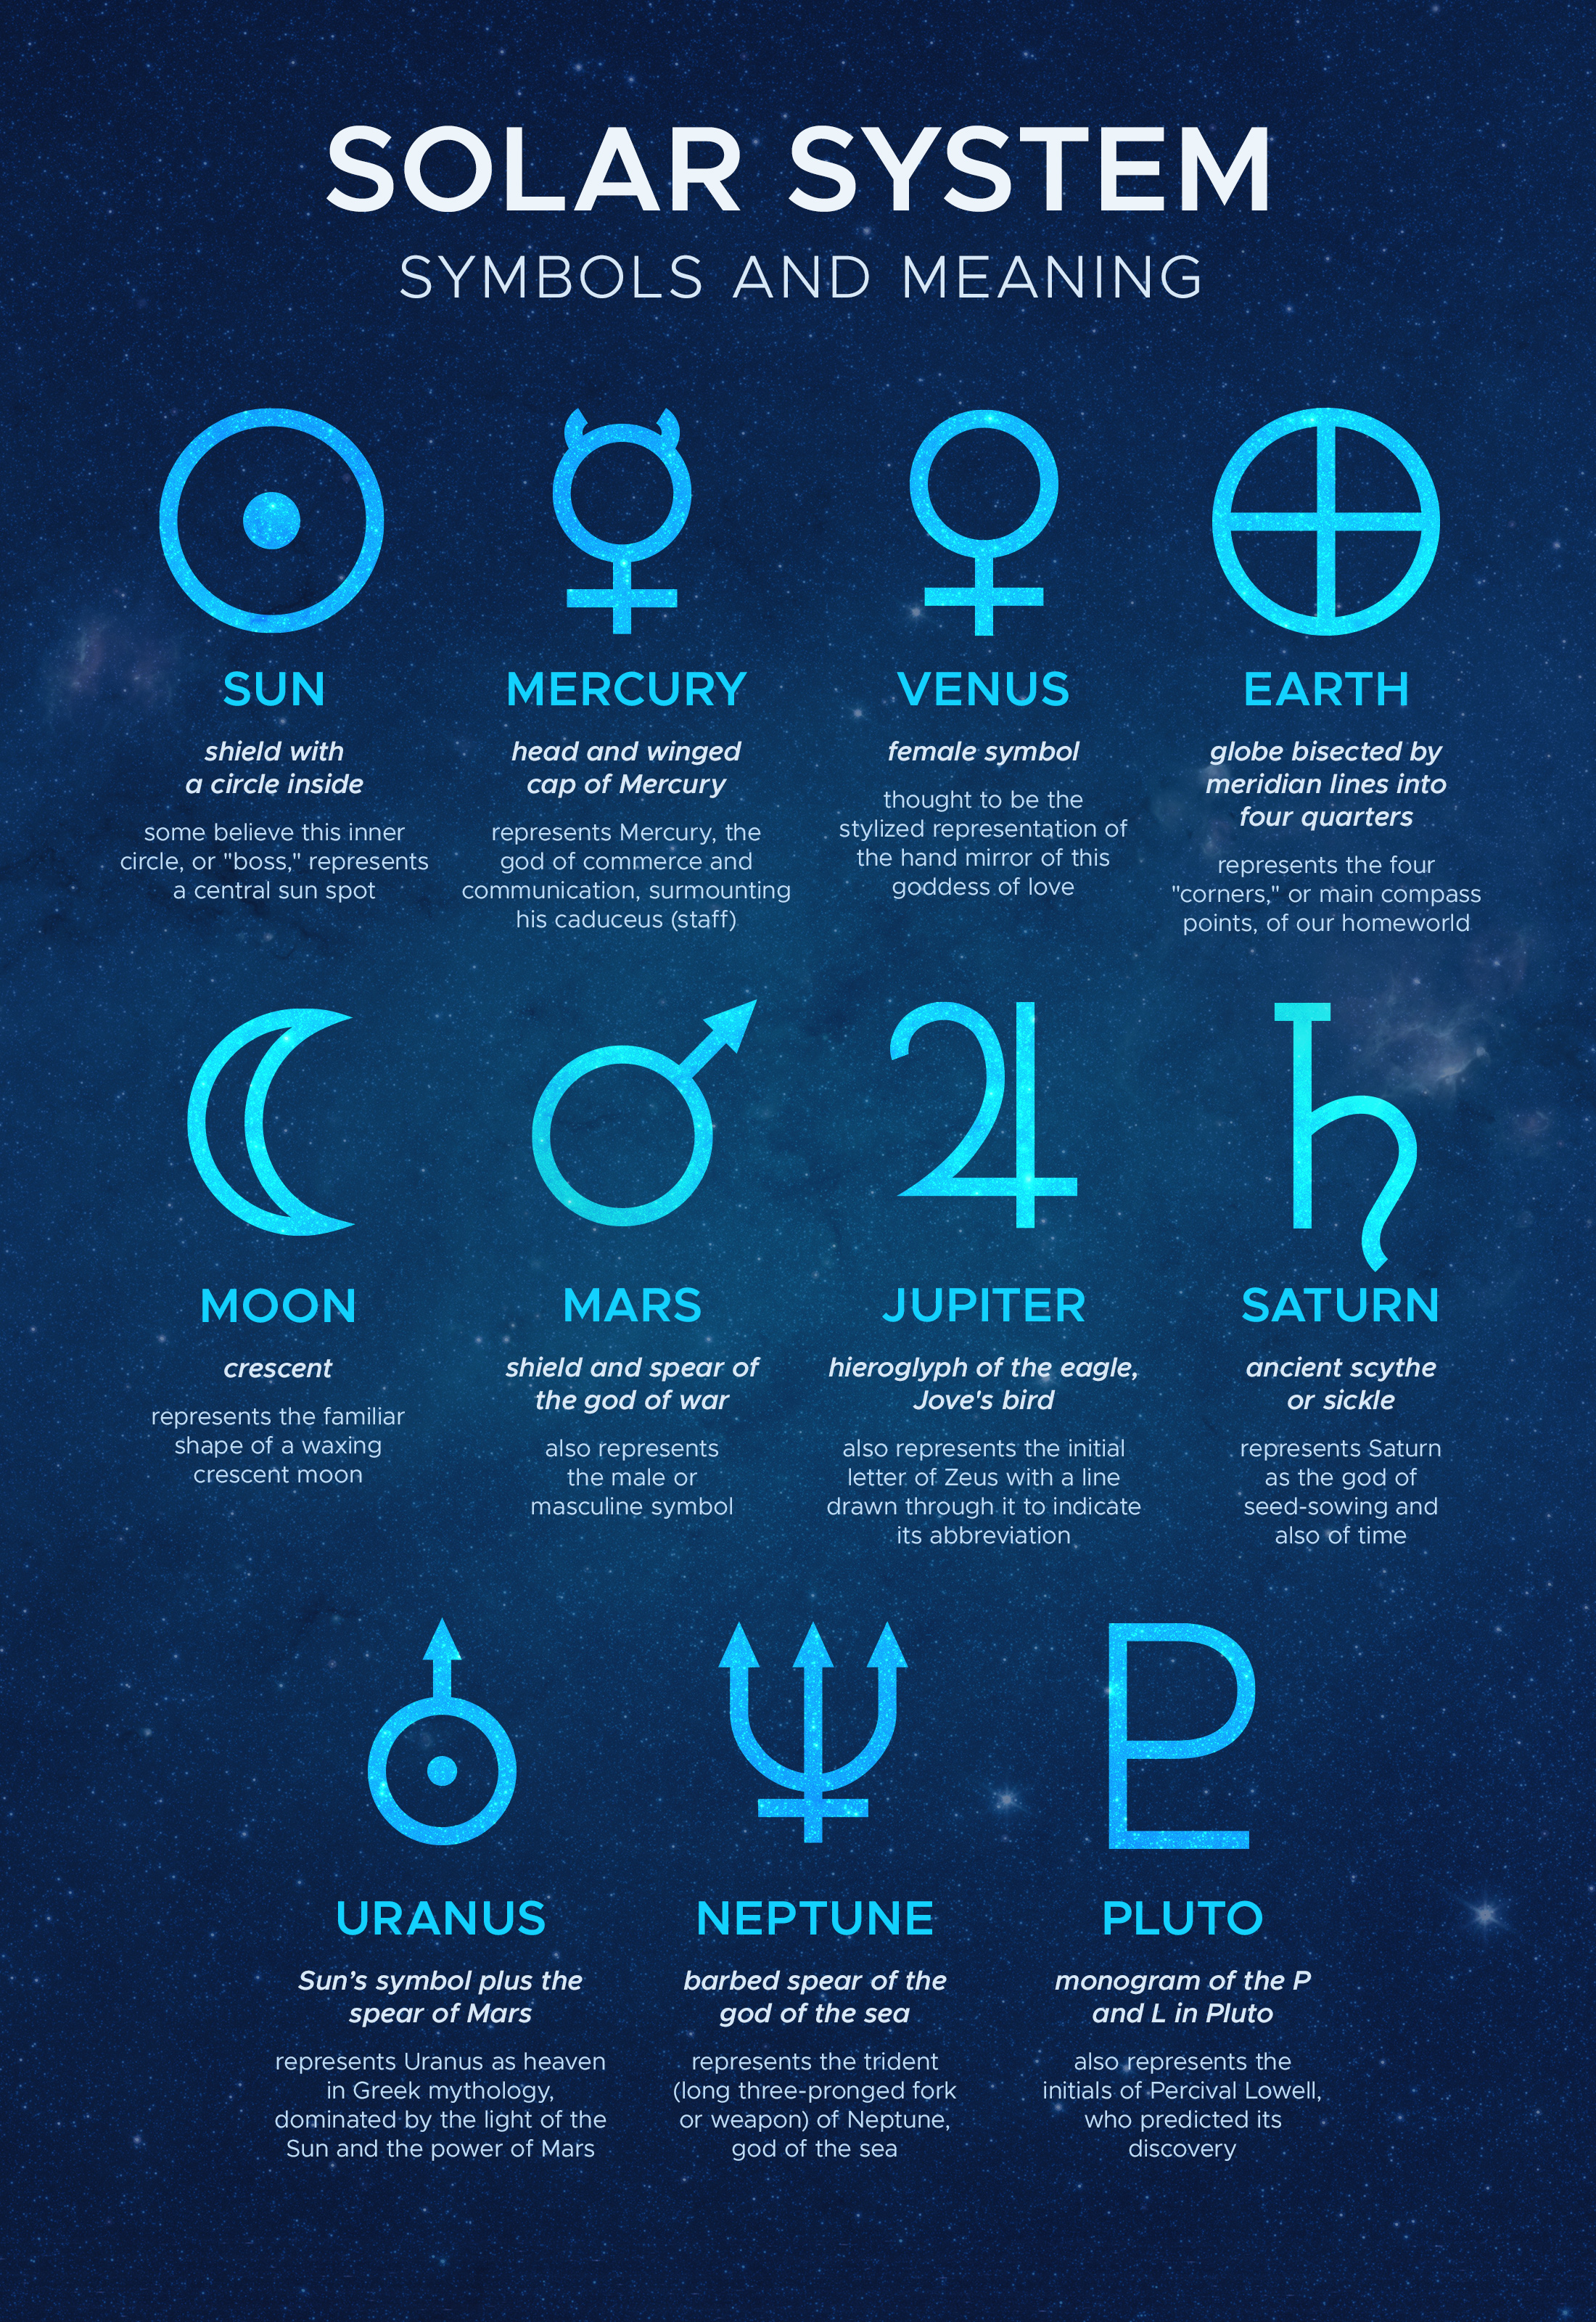 uranus planet symbol s